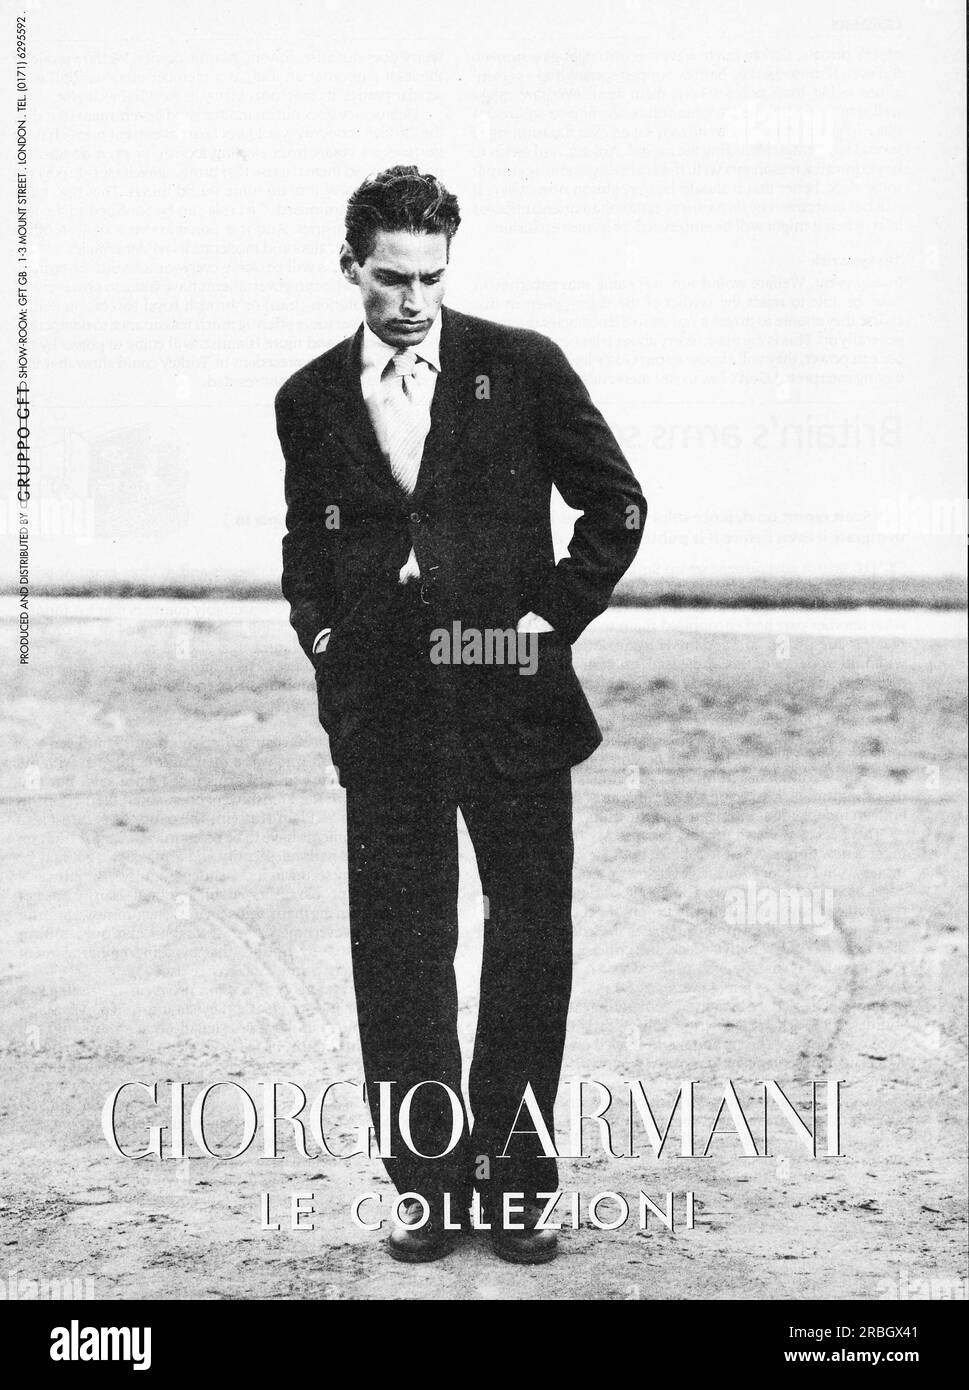 Giorgio Armani le collezioni London show room advert in a magazine 1996  Stock Photo - Alamy